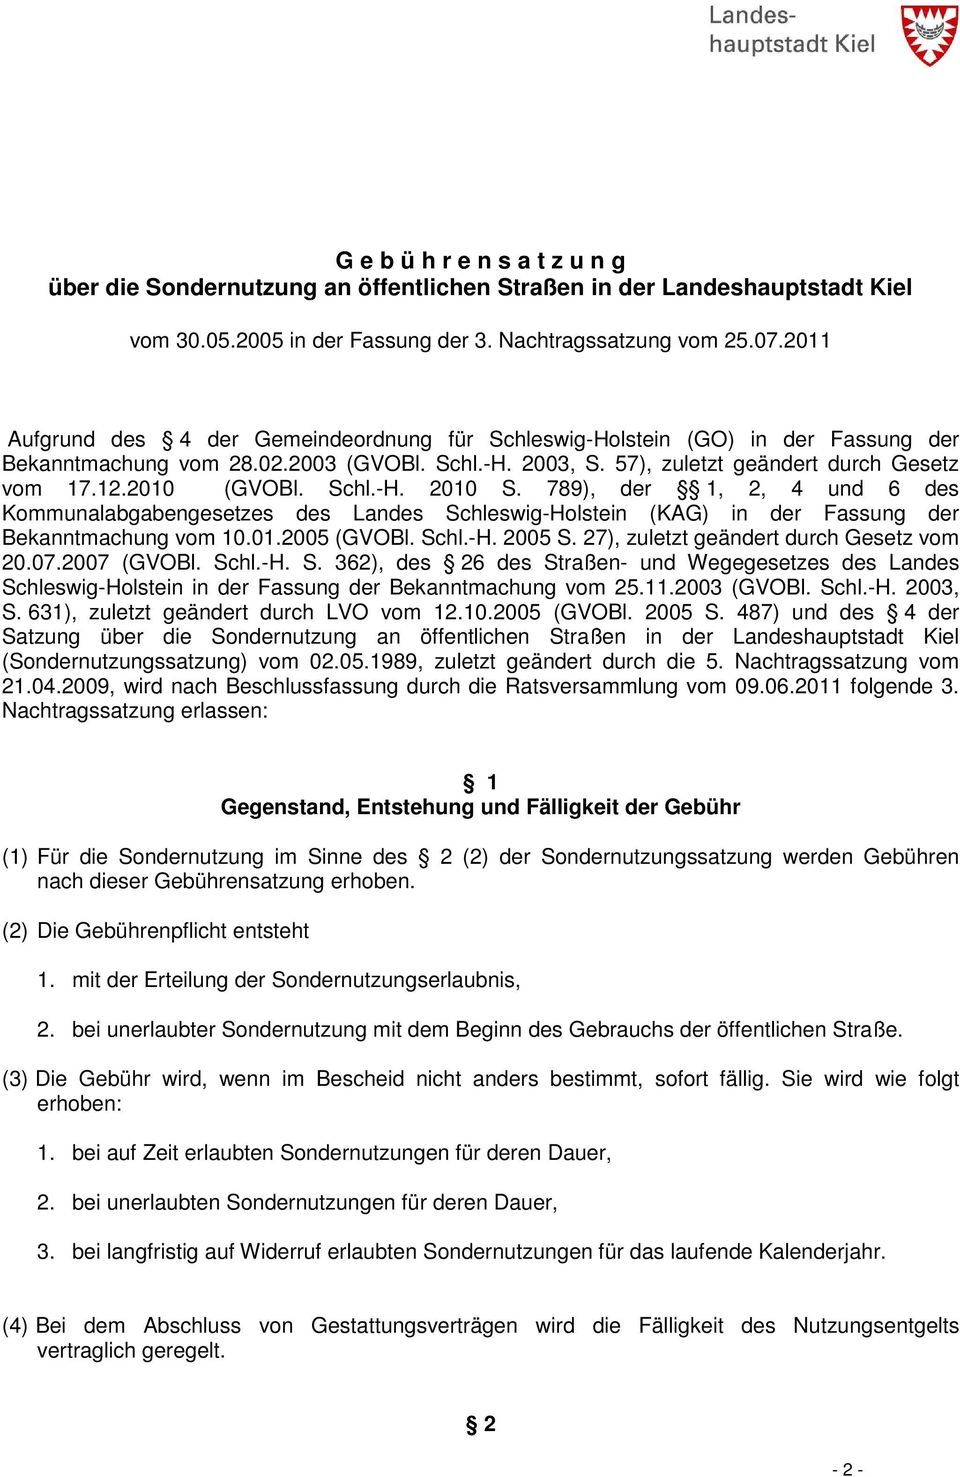 Schl.-H. 2010 S. 789), der 1, 2, 4 und 6 des Kommunalabgabengesetzes des Landes Schleswig-Holstein (KAG) in der Fassung der Bekanntmachung vom 10.01.2005 (GVOBl. Schl.-H. 2005 S.